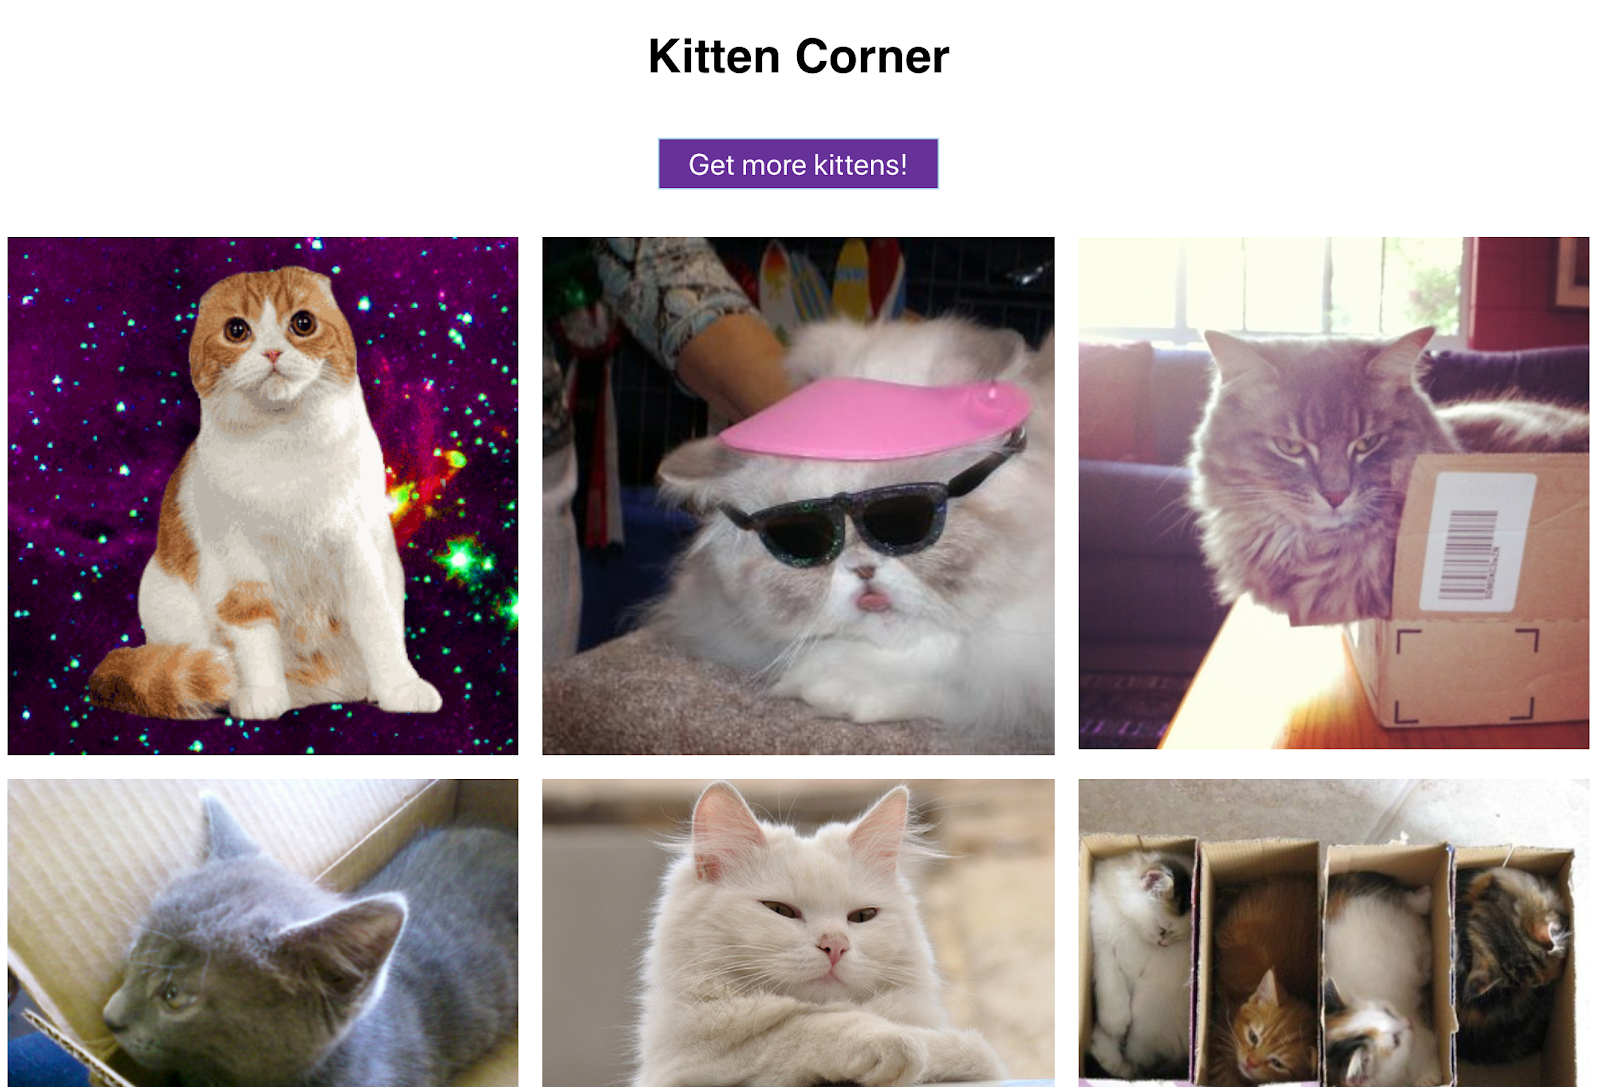 เว็บแอปนี้แสดงรูปแมวน่ารักๆ ในตารางกริดและมีปุ่มสำหรับแสดงเพิ่มเติมอีกด้วย